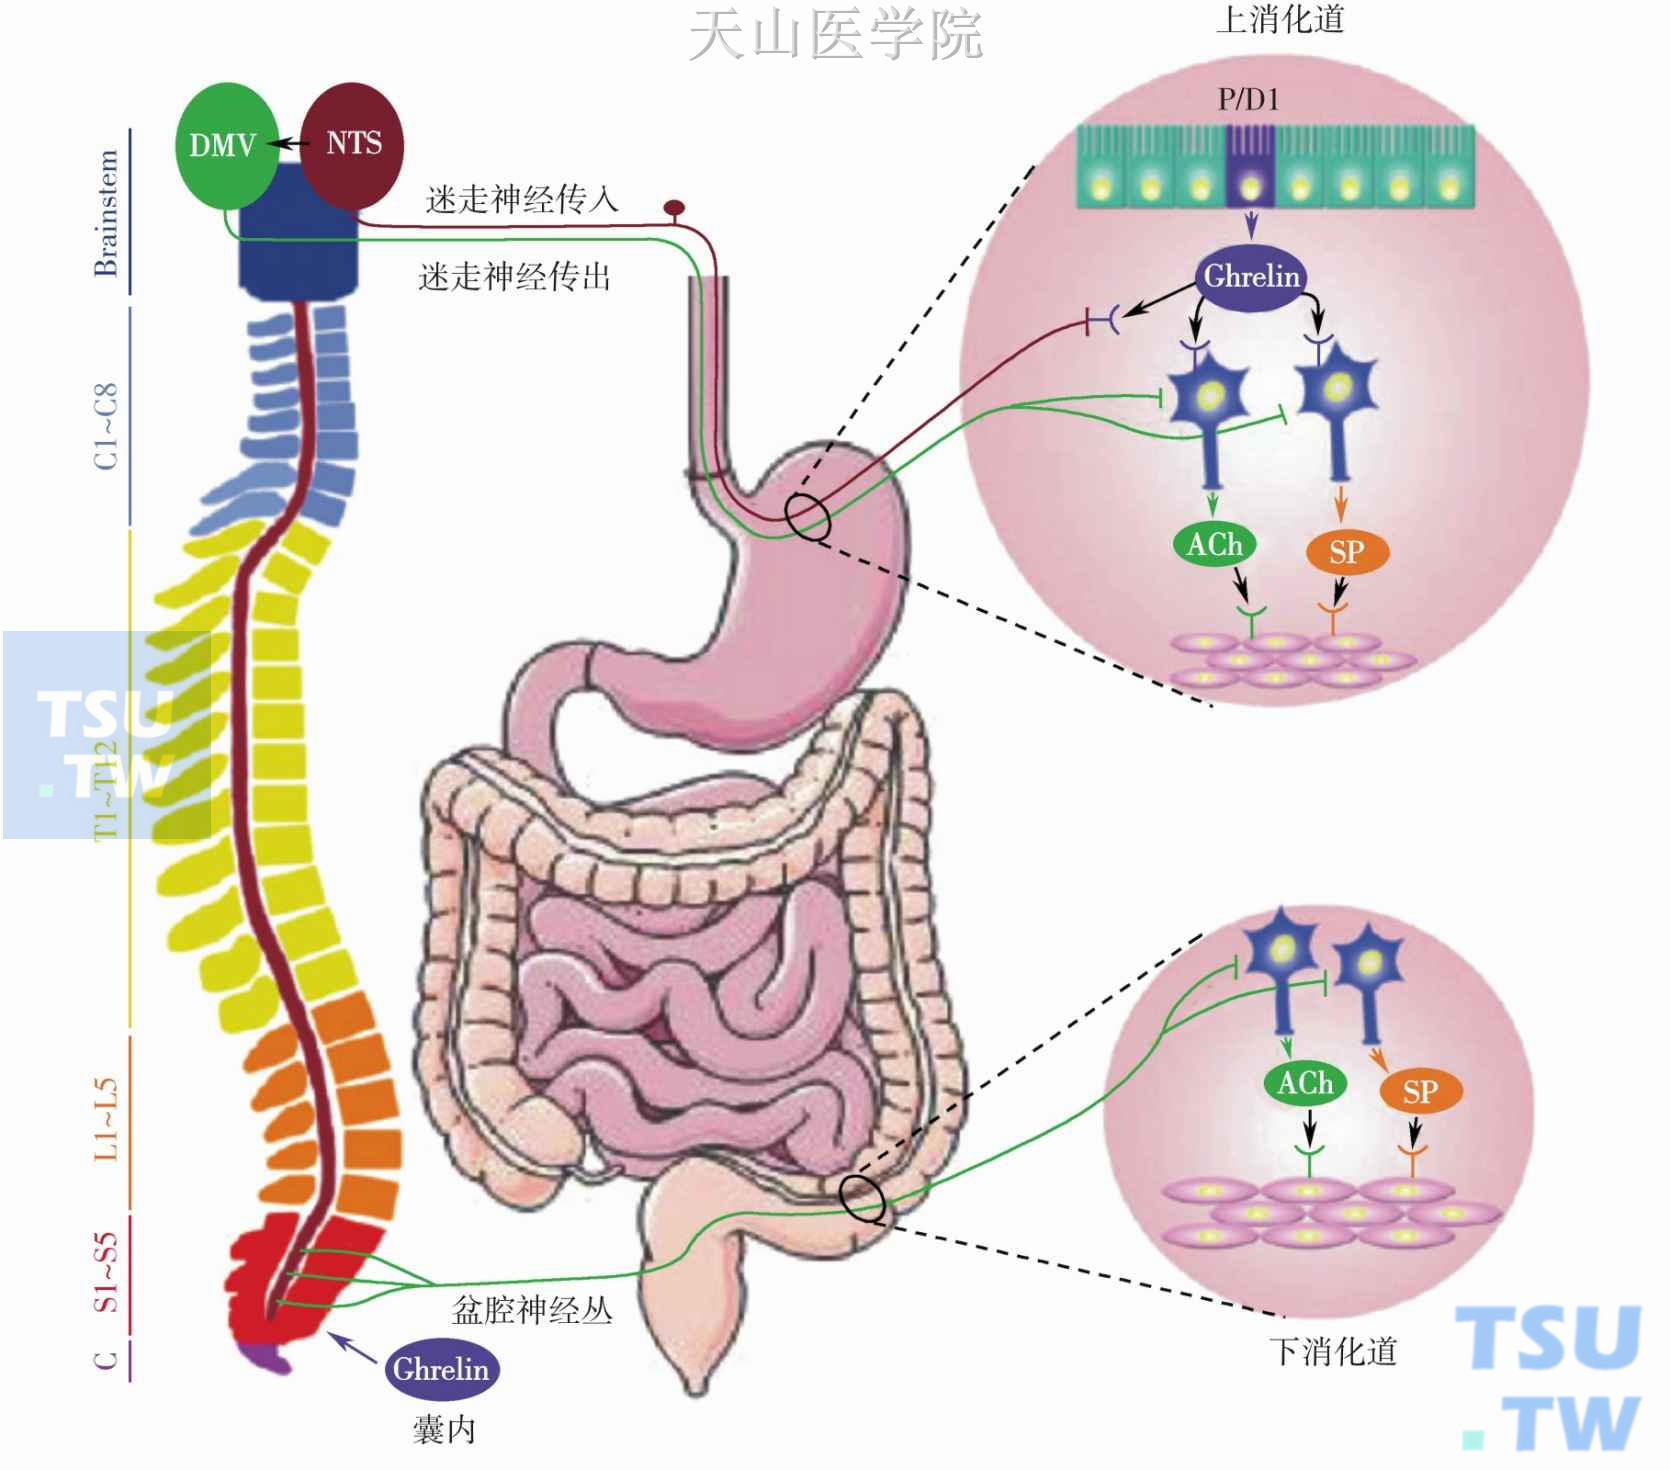 胃促生长素发挥调节胃肠道动力的作用简图